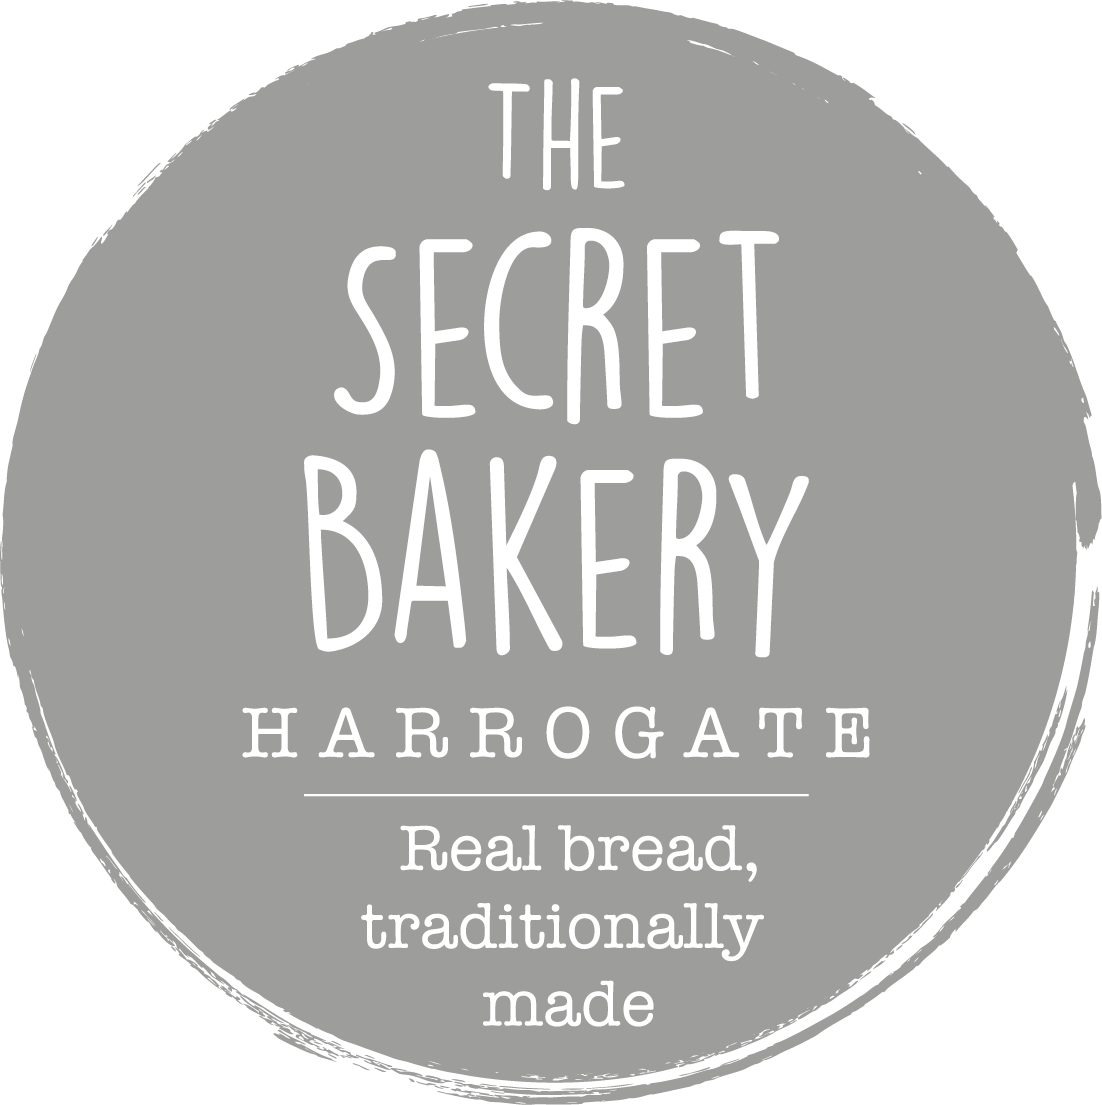 The Secret Bakery Harrogate